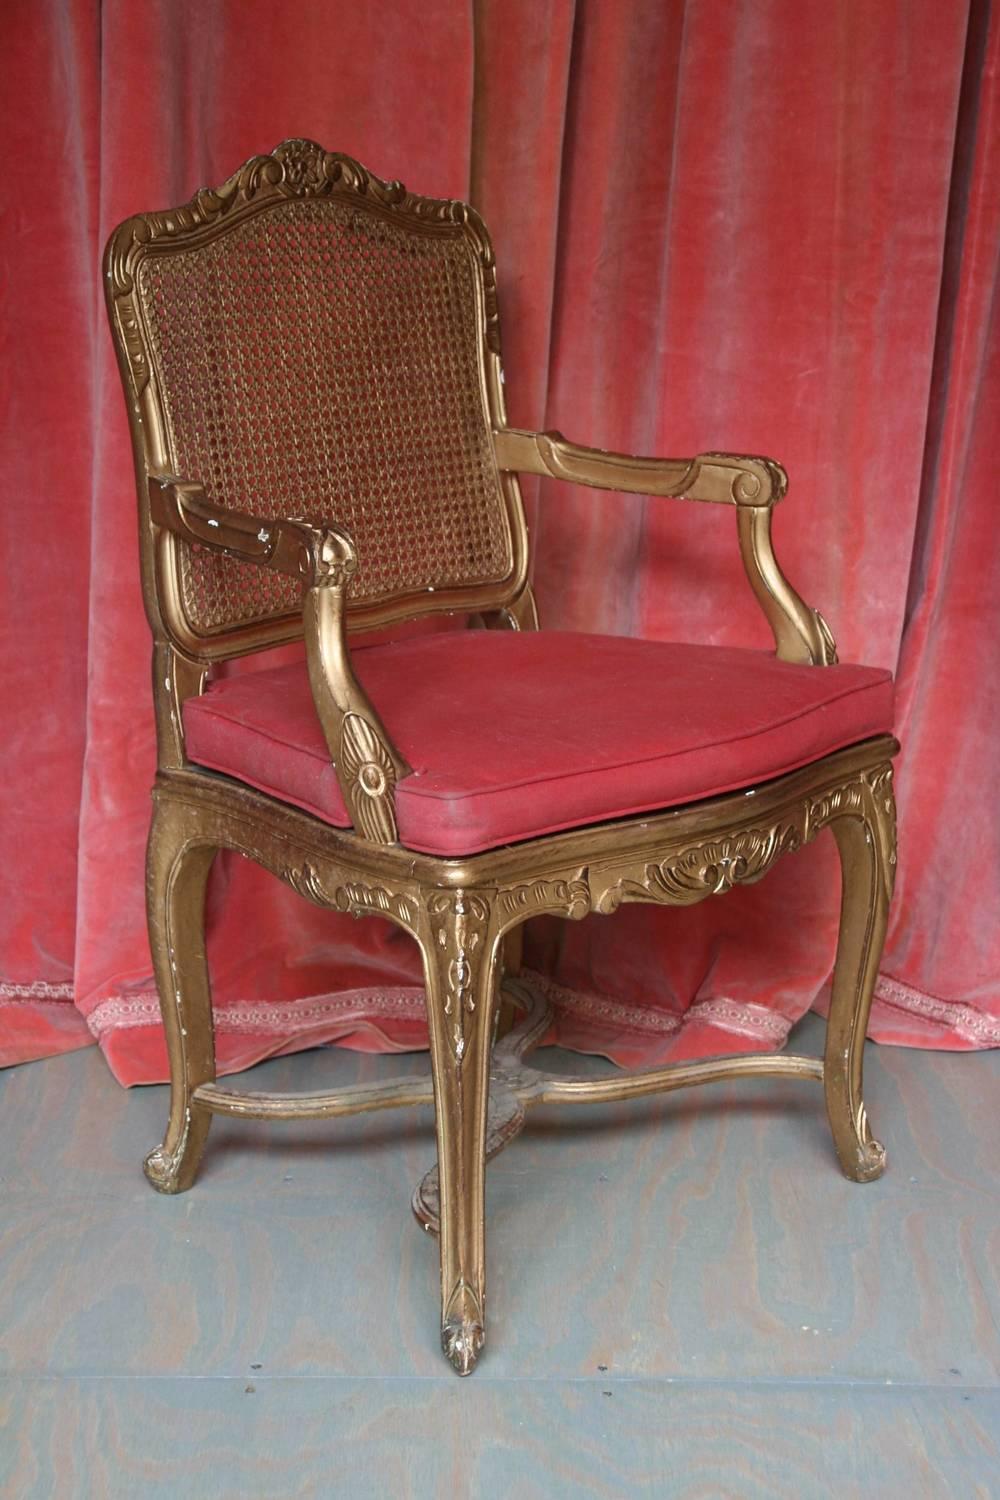 Un exquis fauteuil italien doré de style rococo. Ce magnifique fauteuil est fabriqué à partir des matériaux les plus nobles et conçu avec une attention particulière aux détails. Son cadre élégant, peint en or, met parfaitement en valeur les détails